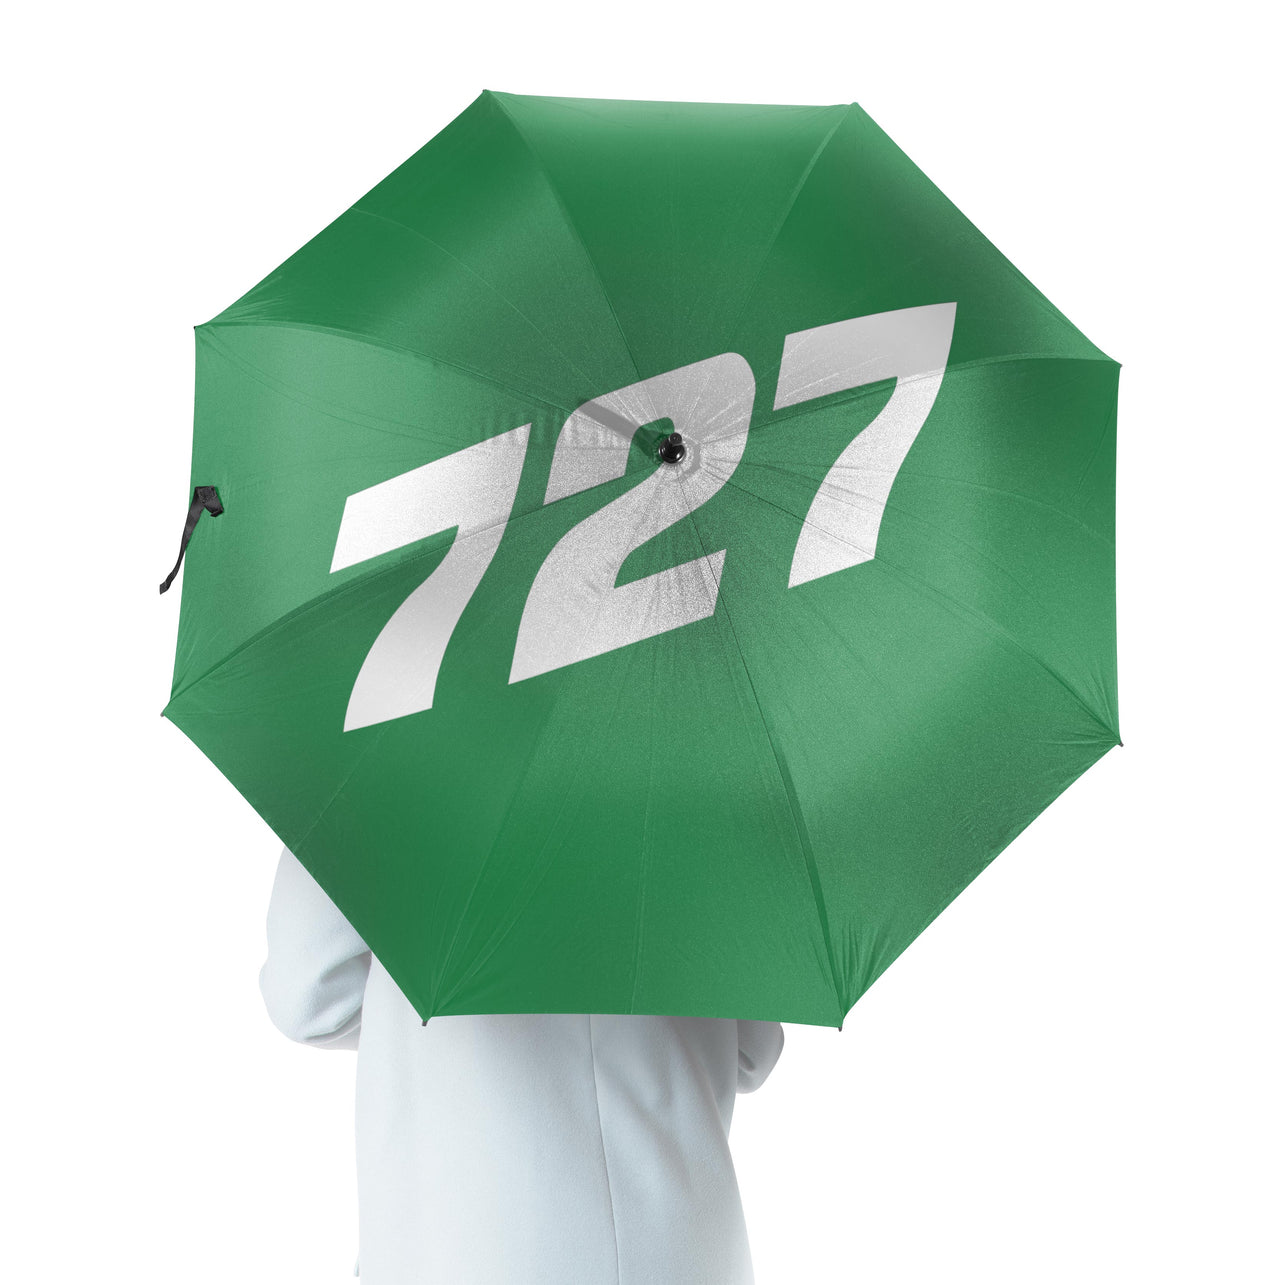 727 Flat Text Designed Umbrella